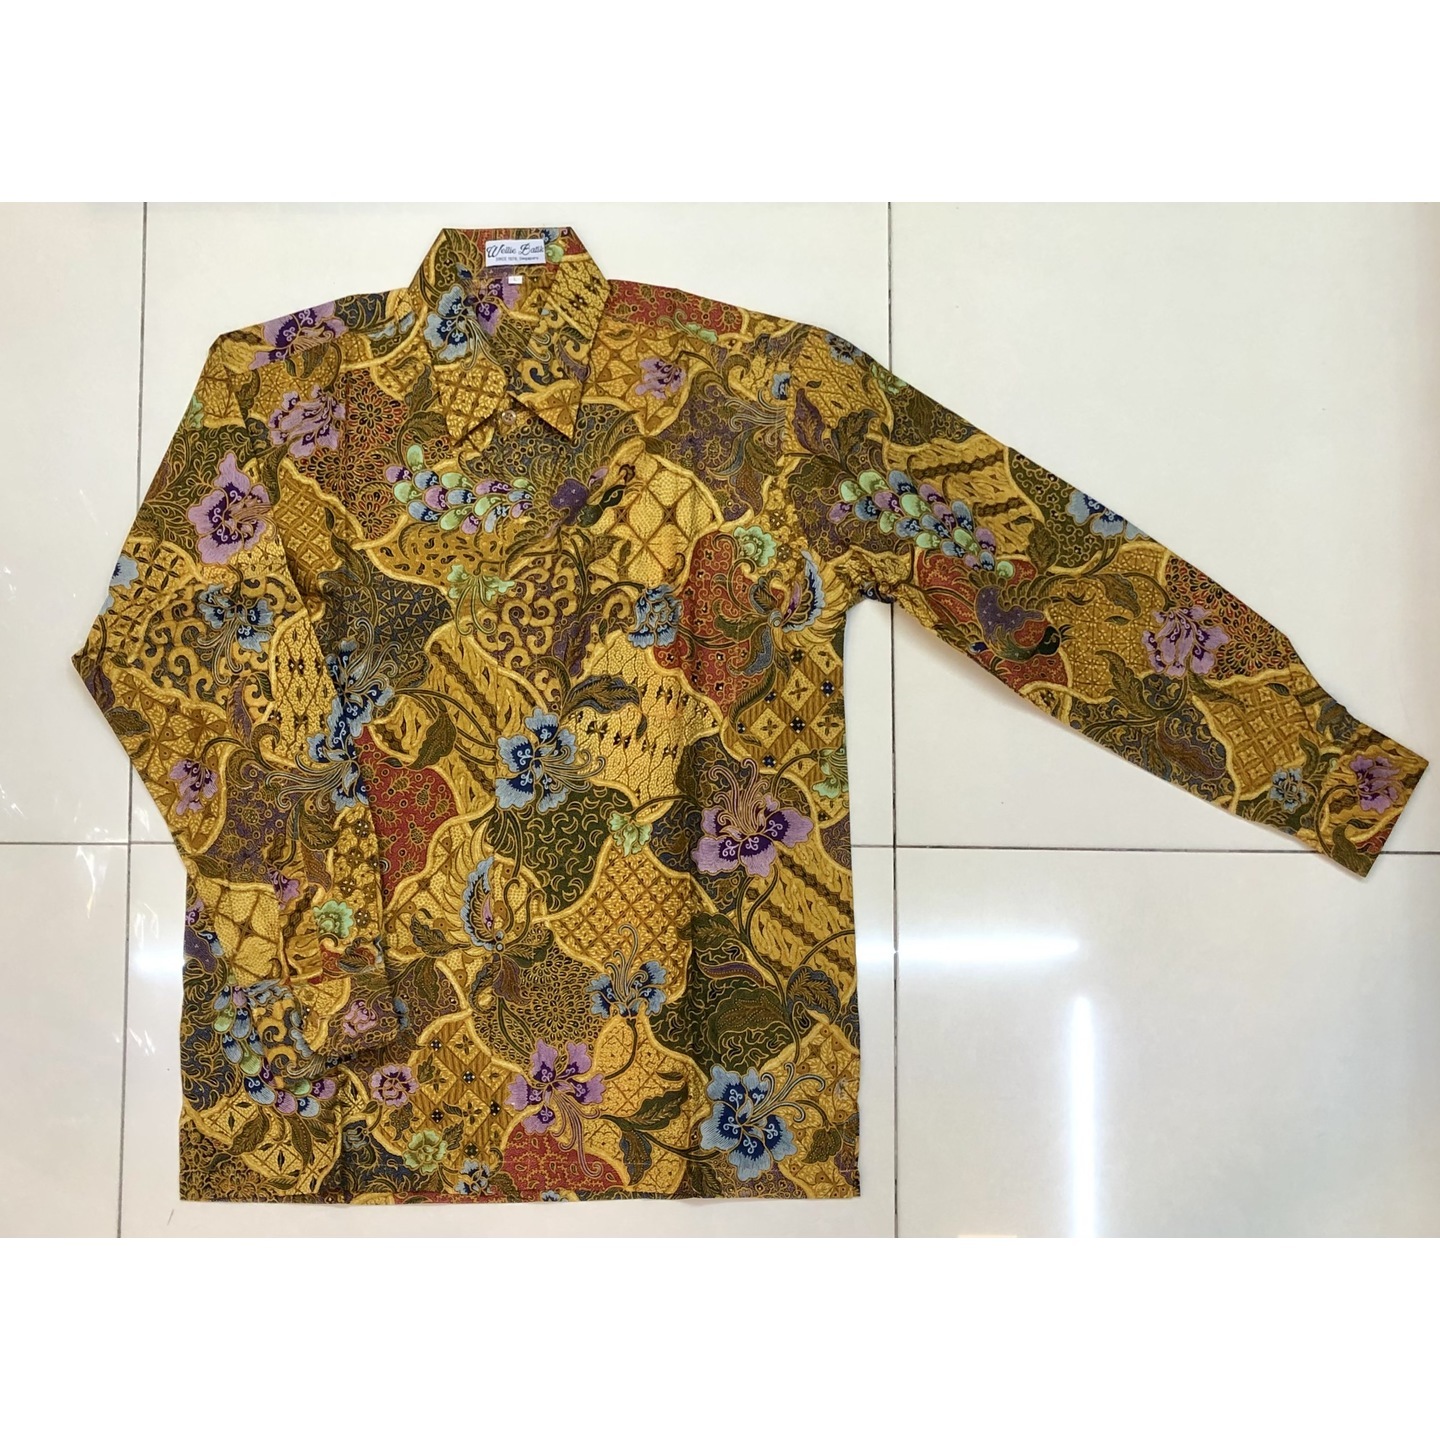 Batik print long sleeve shirt